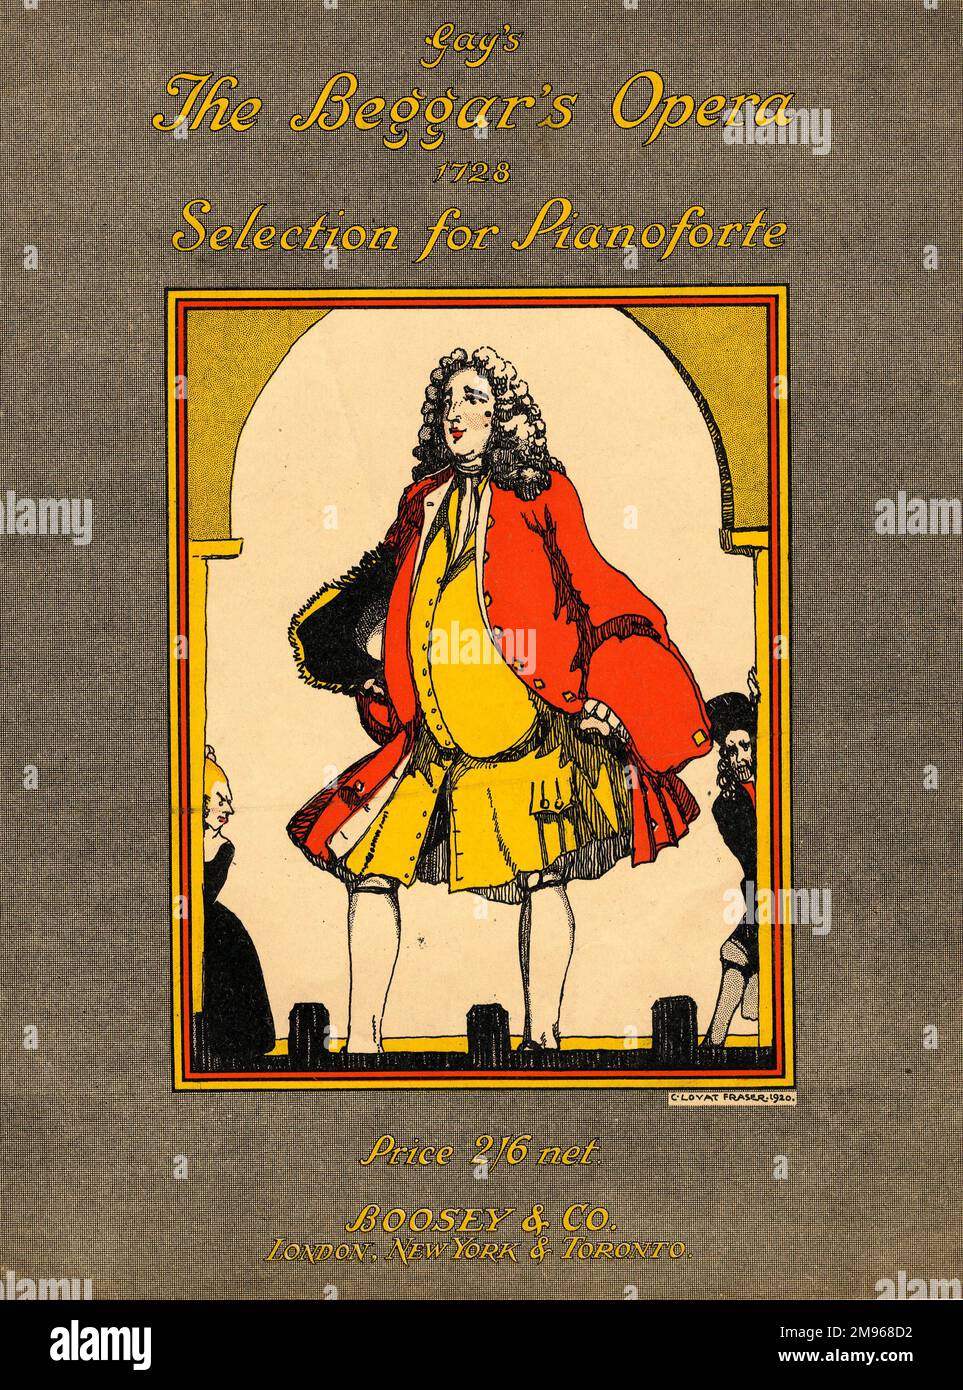 Conception de couverture sur un livre de musique de piano pour l'Opéra de Beggar, par John gay, joué pour la première fois en 1728. Un homme plumeux du 18th siècle est représenté, portant un arc aux lampes de théâtre. Banque D'Images